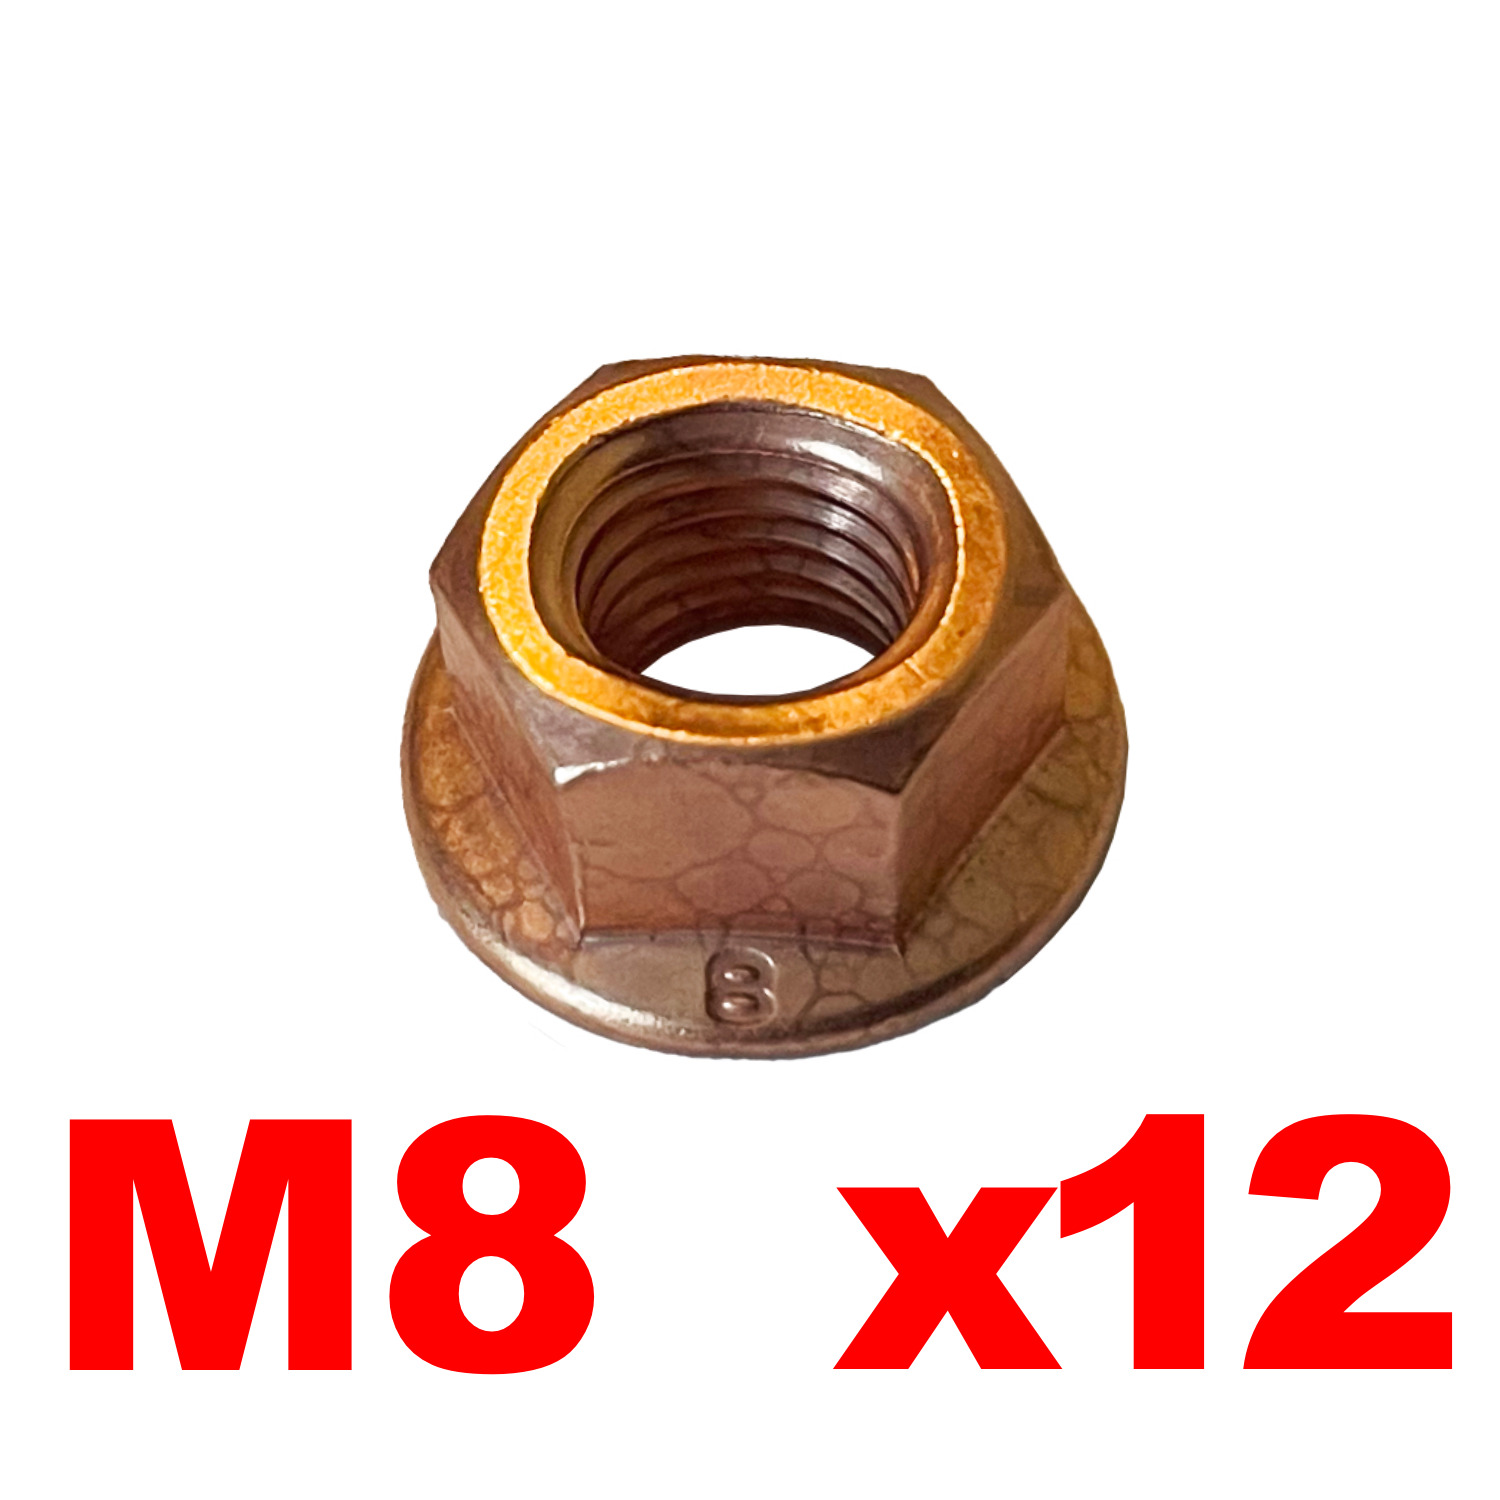 M8 Copper Nut x12 for BMW Exhaust System E30 E36 E46 E34 E39 Z3 18307620549